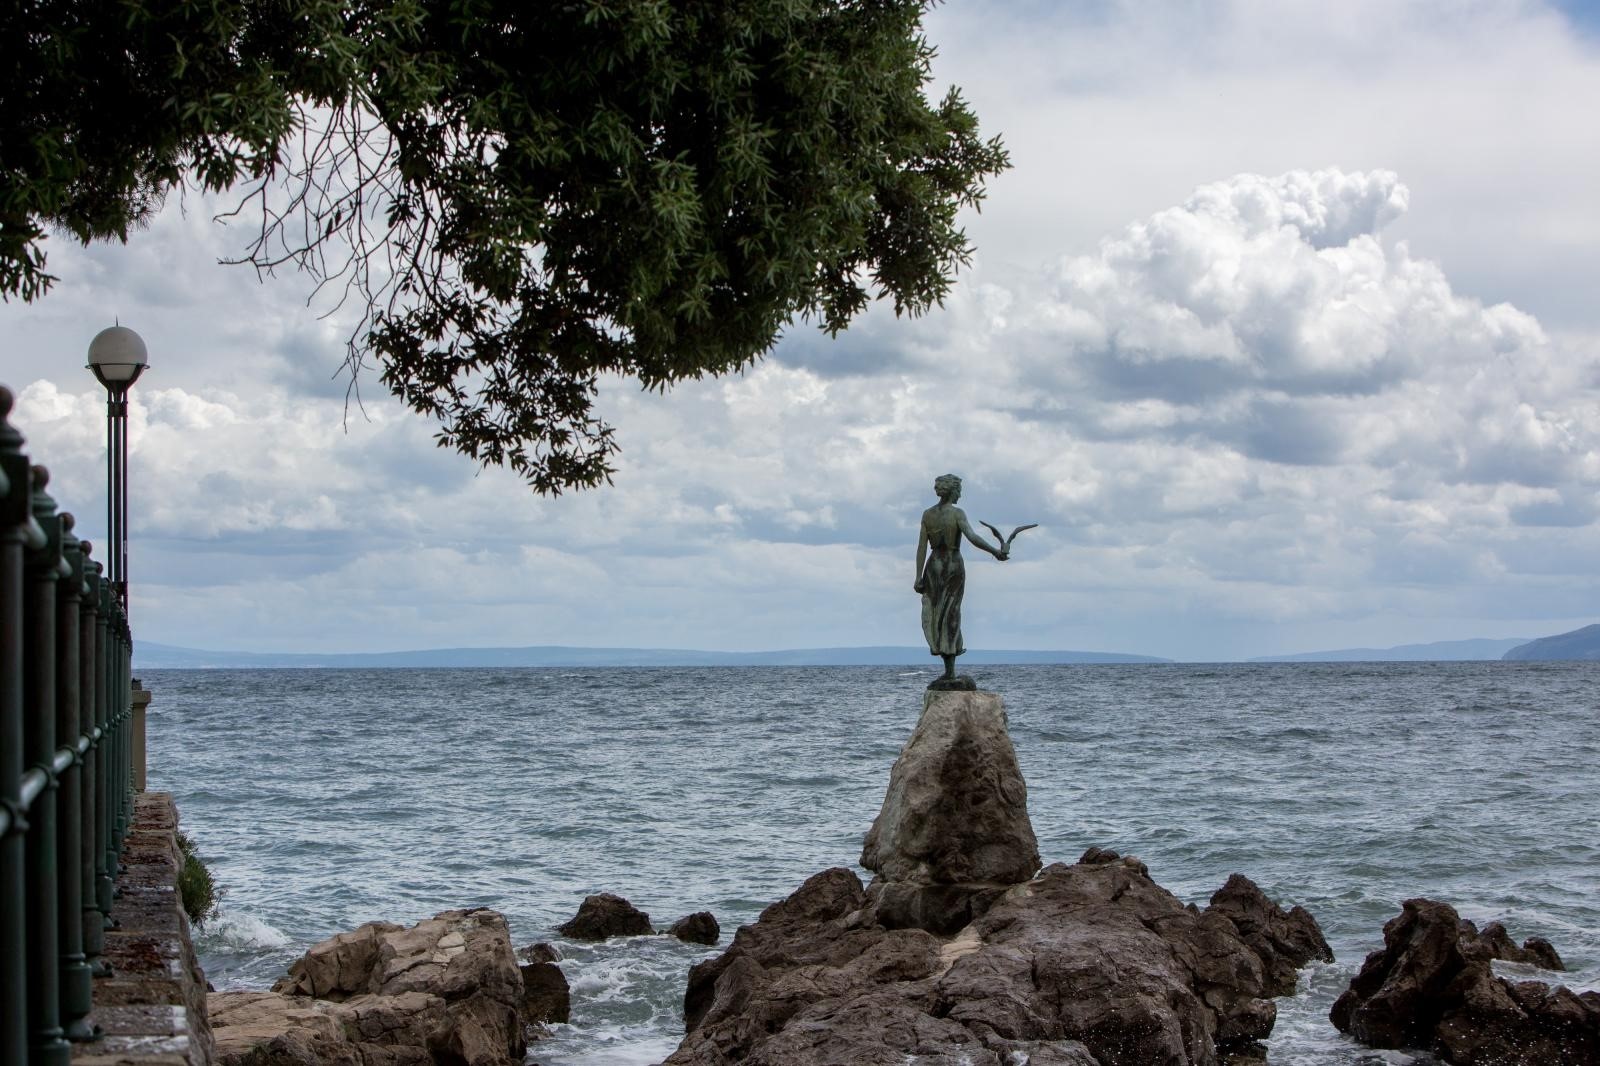 15.05.2018., Opatija - Djevojka s galebom, elegantna statua na stijeni uz obalno setaliste Lungomare, simbol je Opatije i cijelog Kvarnera. 

Photo: Nel Pavletic/PIXSELL